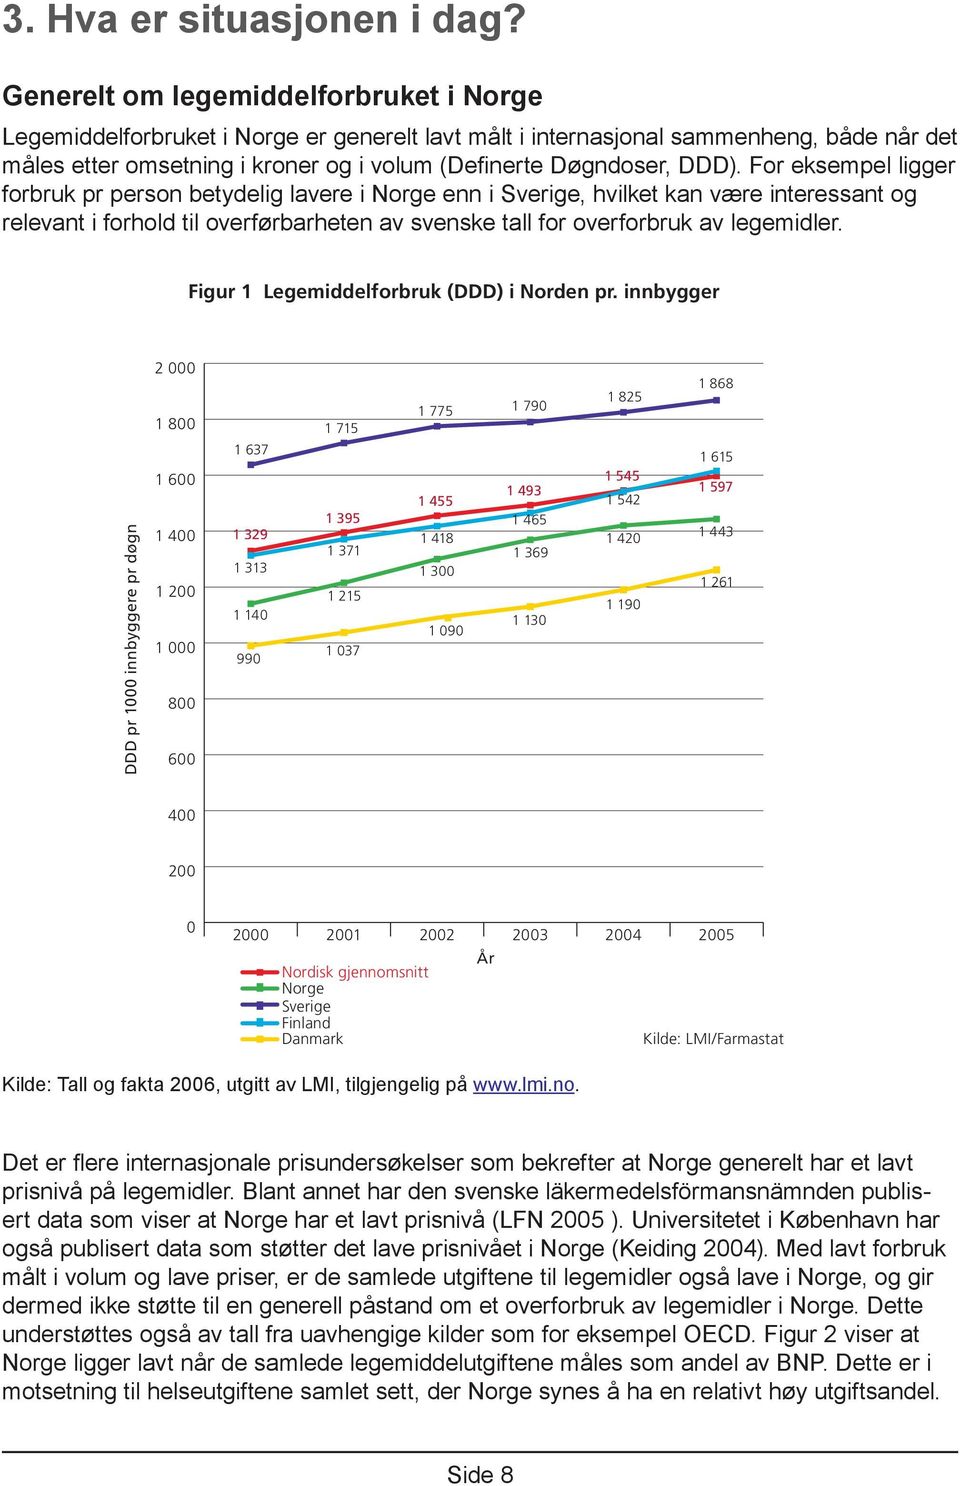 For eksempel ligger forbruk pr person betydelig lavere i Norge enn i Sverige, hvilket kan være interessant og relevant i forhold til overførbarheten av svenske tall for overforbruk av legemidler.